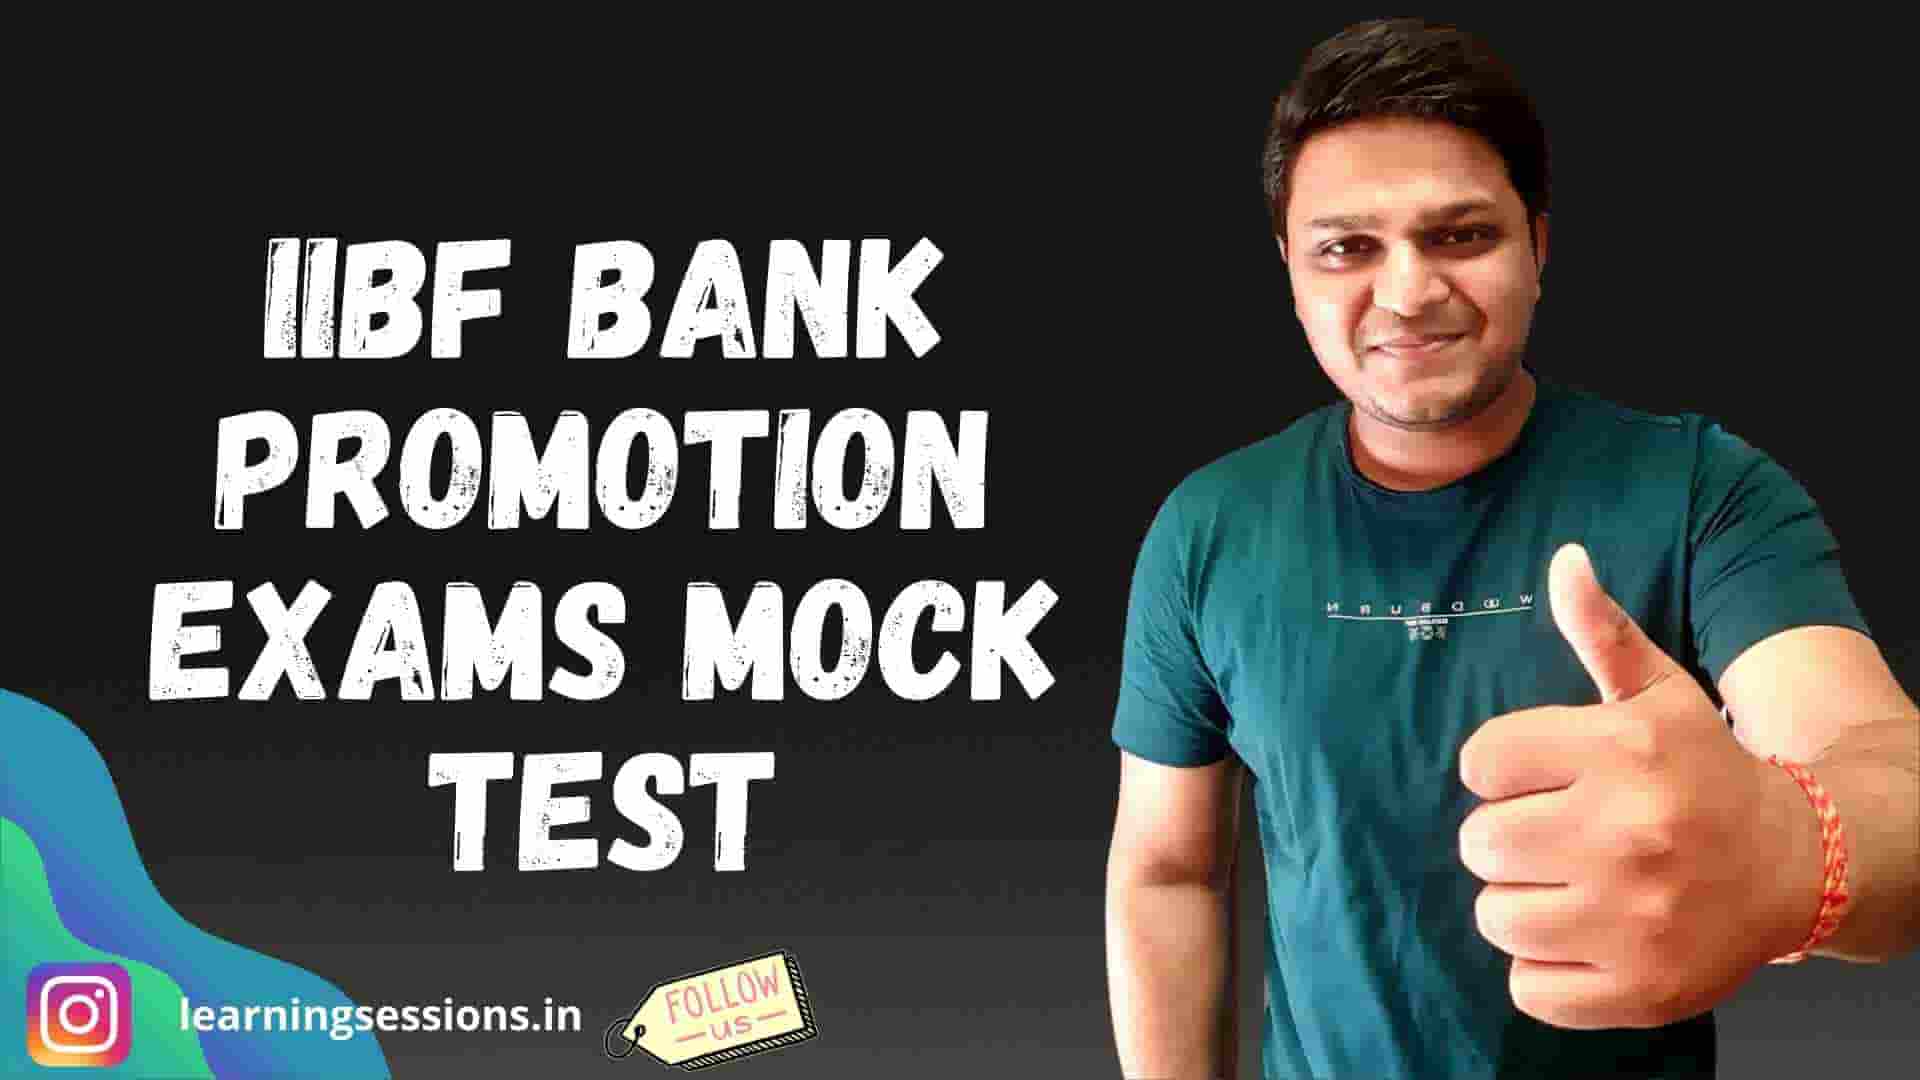 IIBF BANK PROMOTION EXAMS MOCK TEST